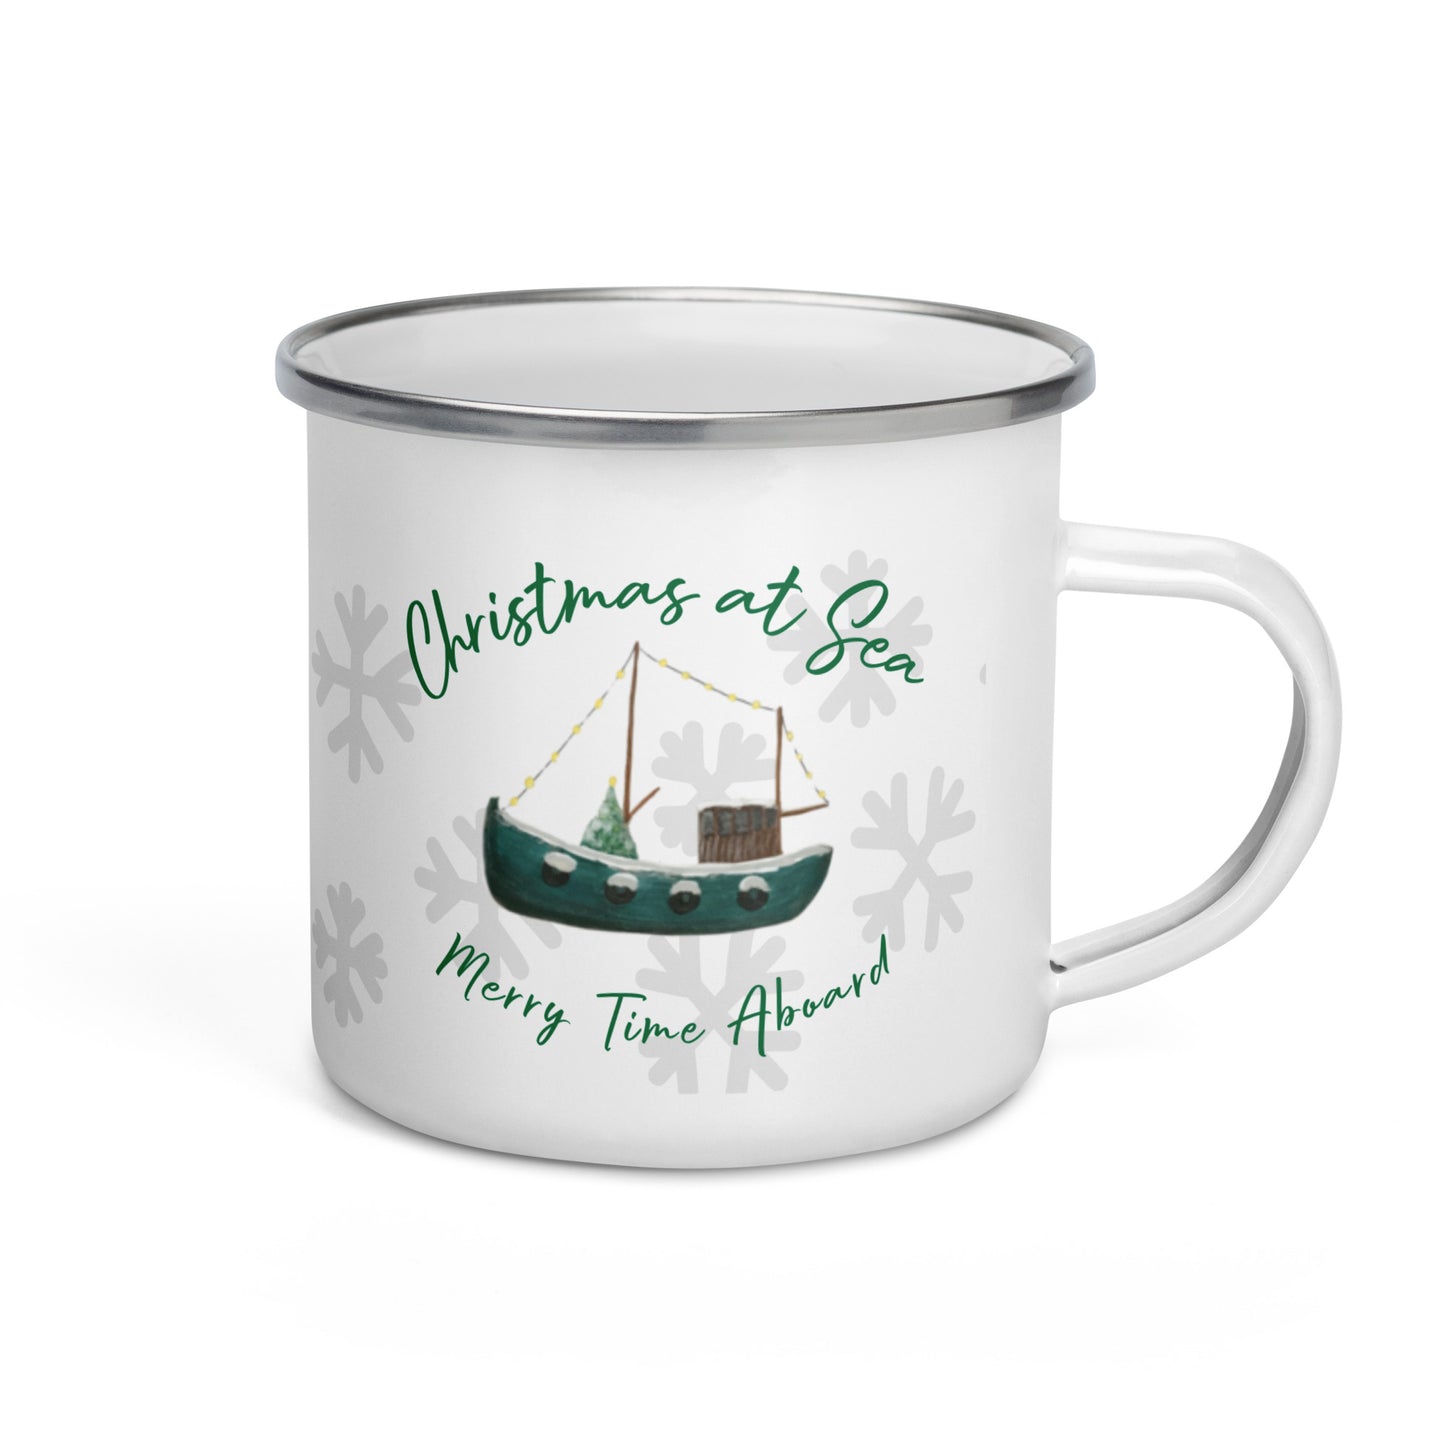 Green fishing boat mug